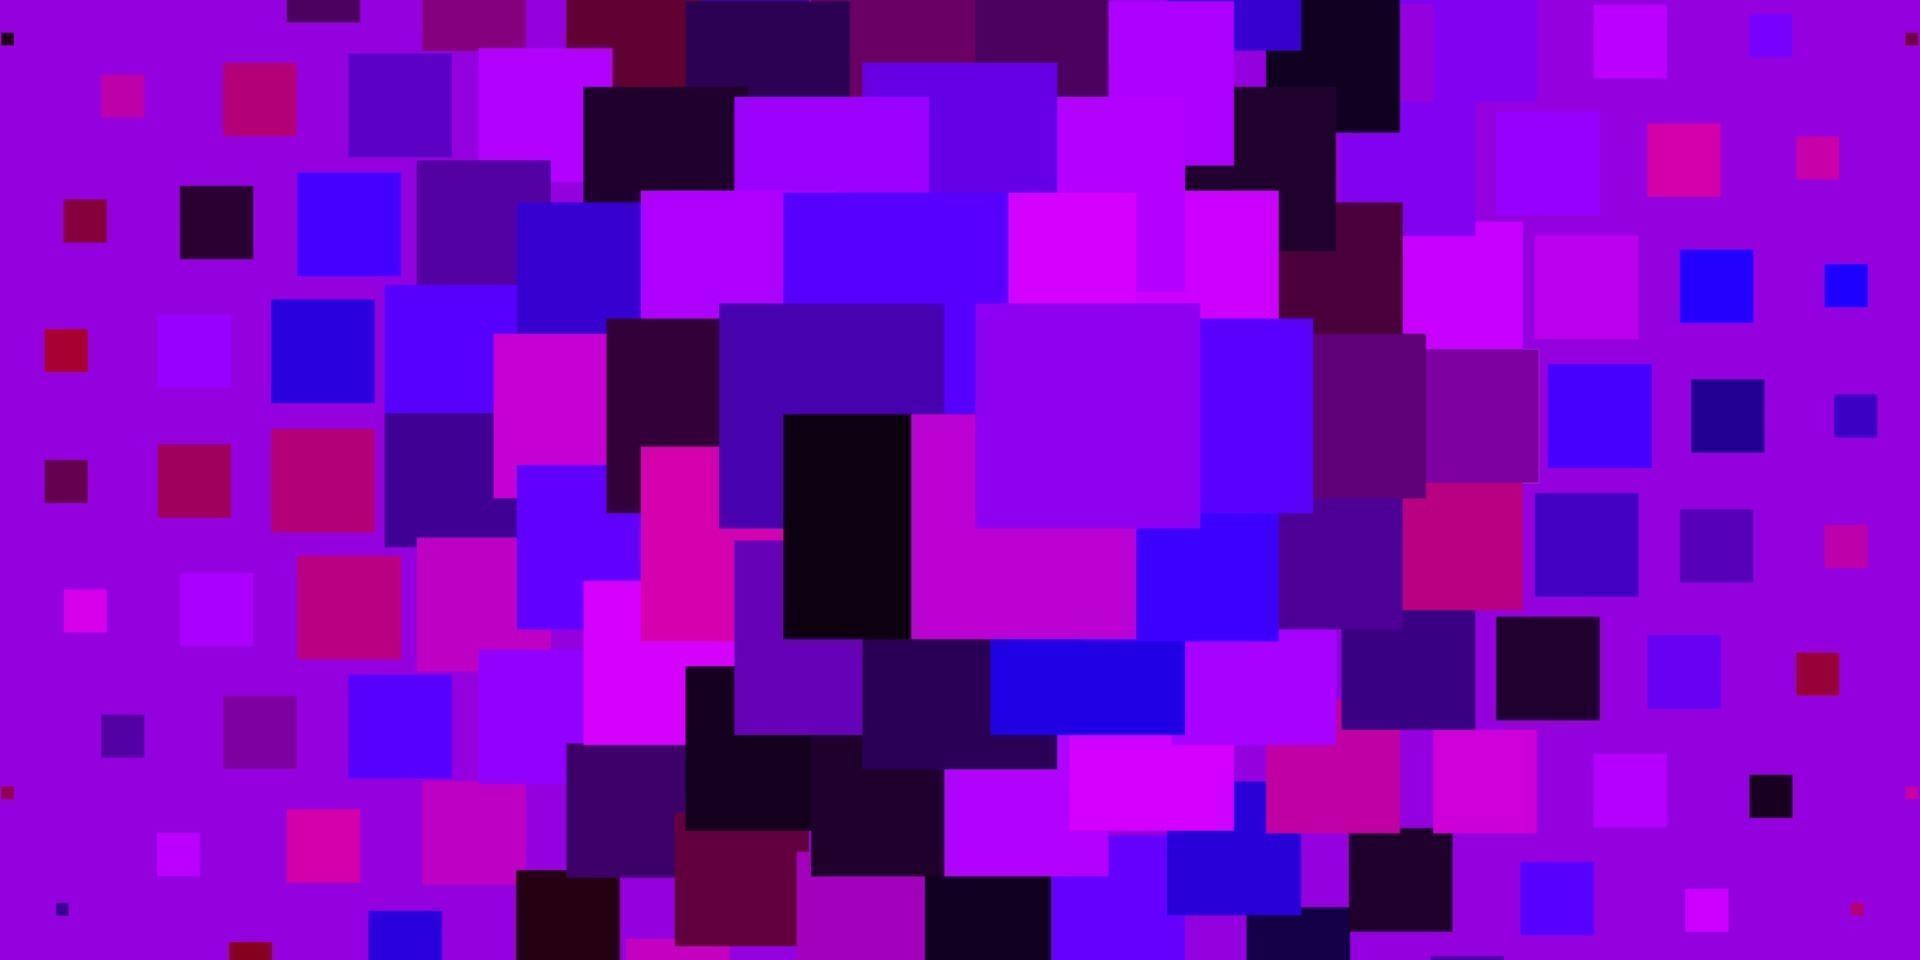 Fondo de vector púrpura claro con rectángulos.